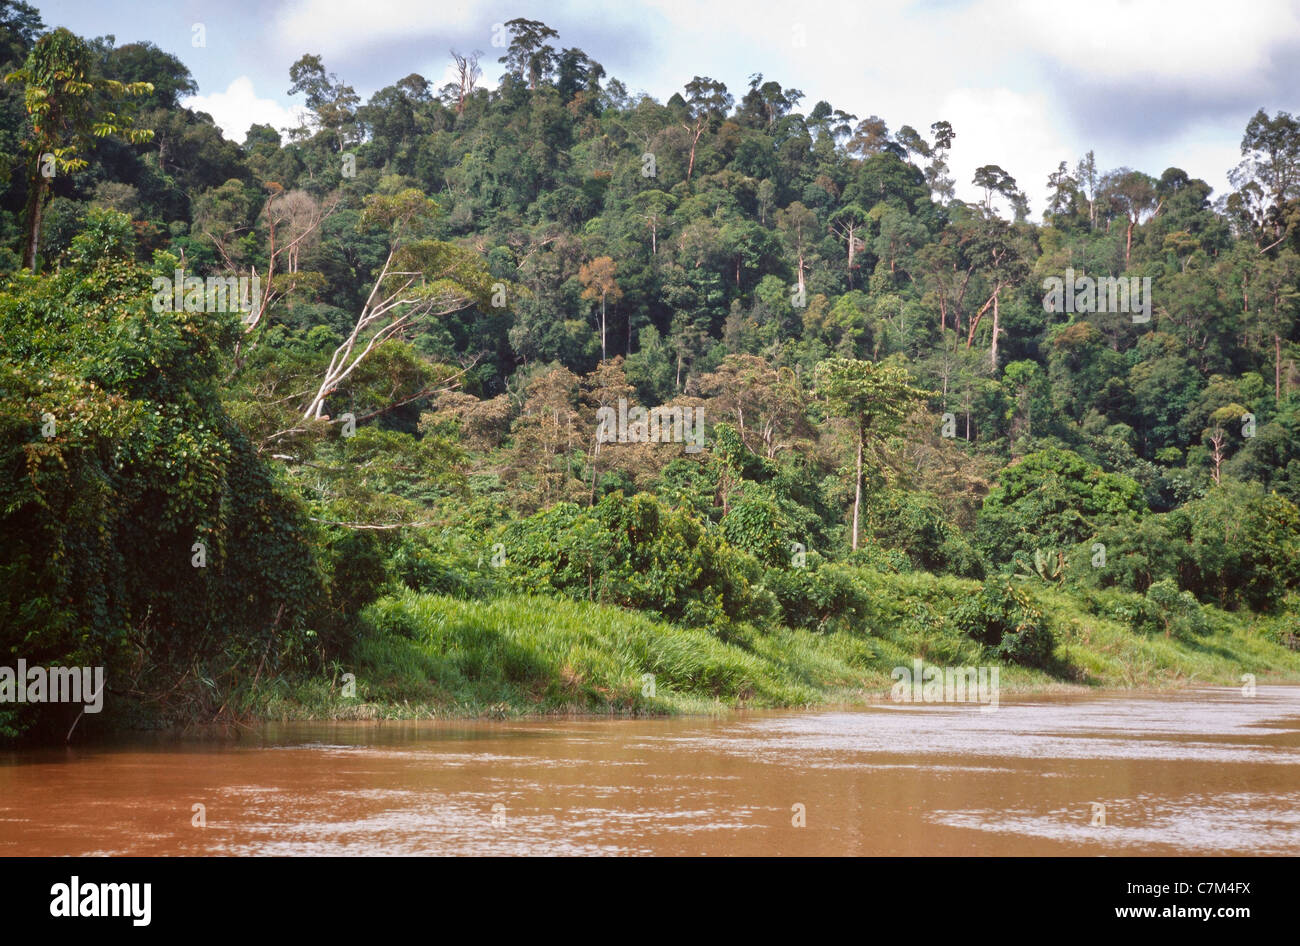 La couverture forestière de la rivière, l'eau de la rivière boueuse, Mulu National Park, Sarawak, Bornéo, Malaisie Orientale Banque D'Images